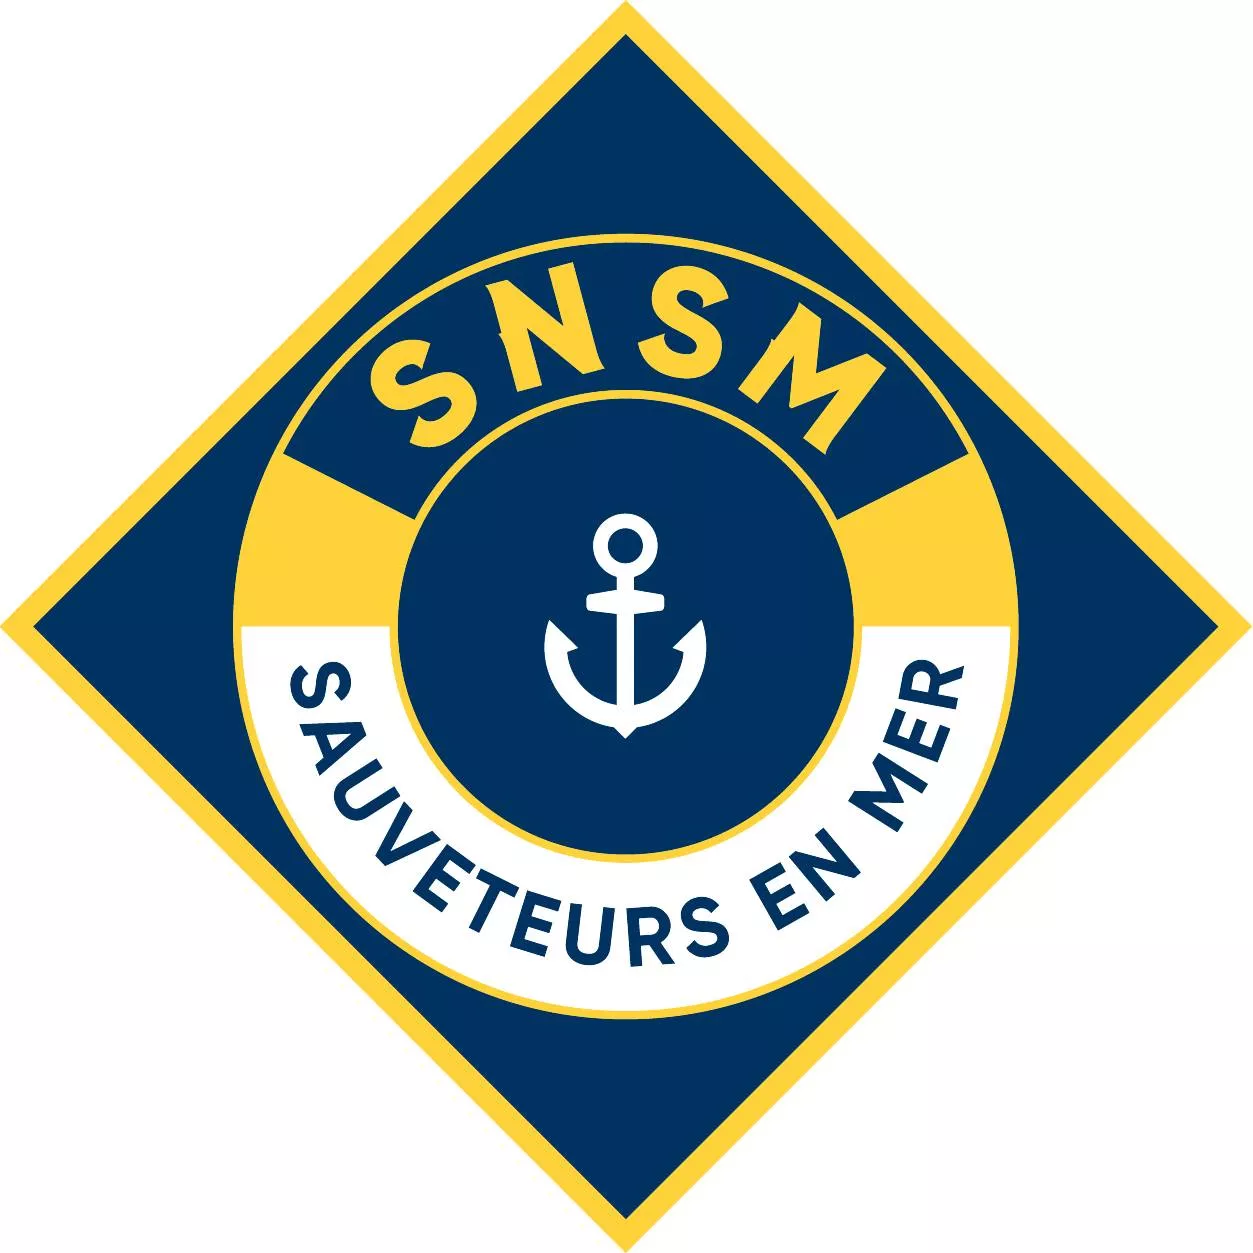 SNSM Les Sauveteurs en Mer